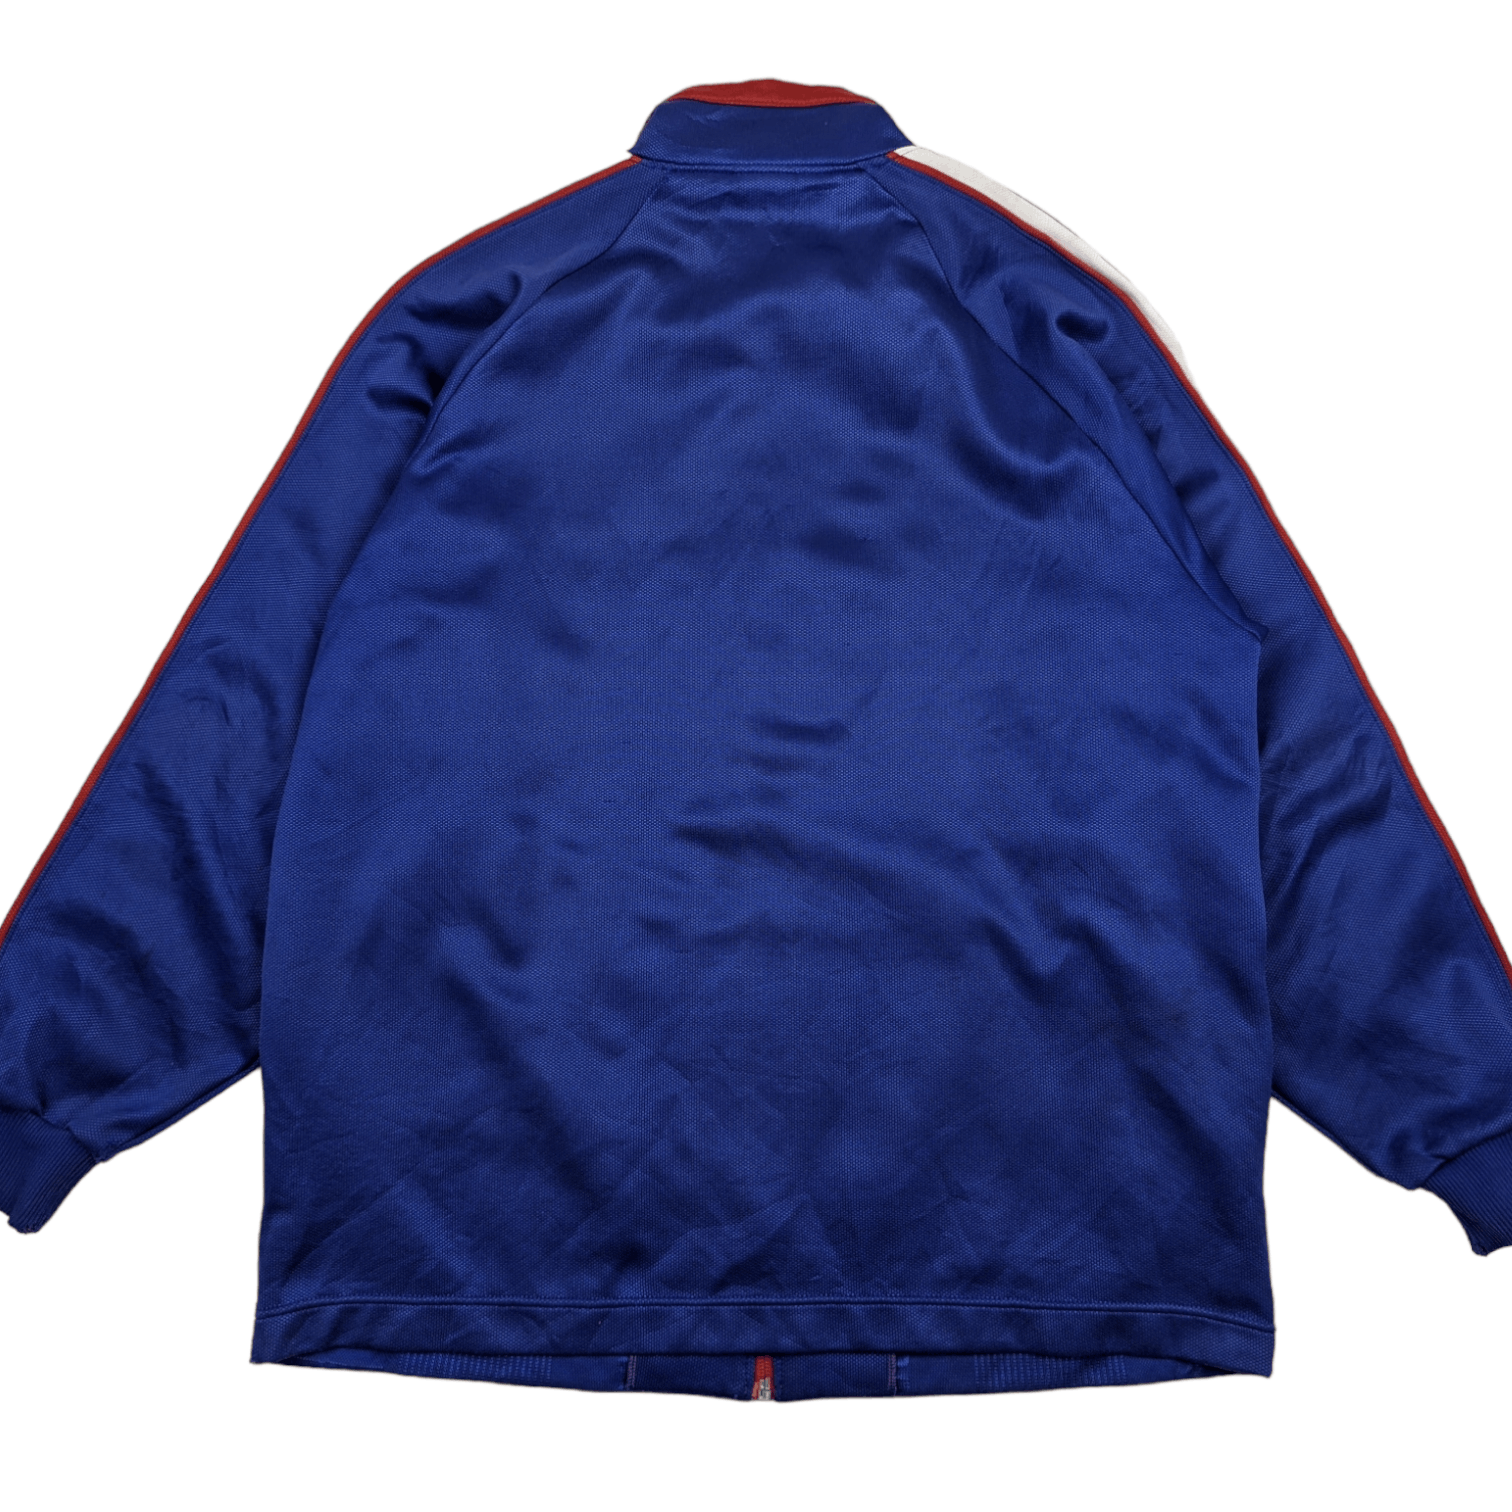 Le Coq Sportif Vintage 90's LE COQ SPORTIF Sportswear Tracktop Jacket Size US L / EU 52-54 / 3 - 8 Thumbnail